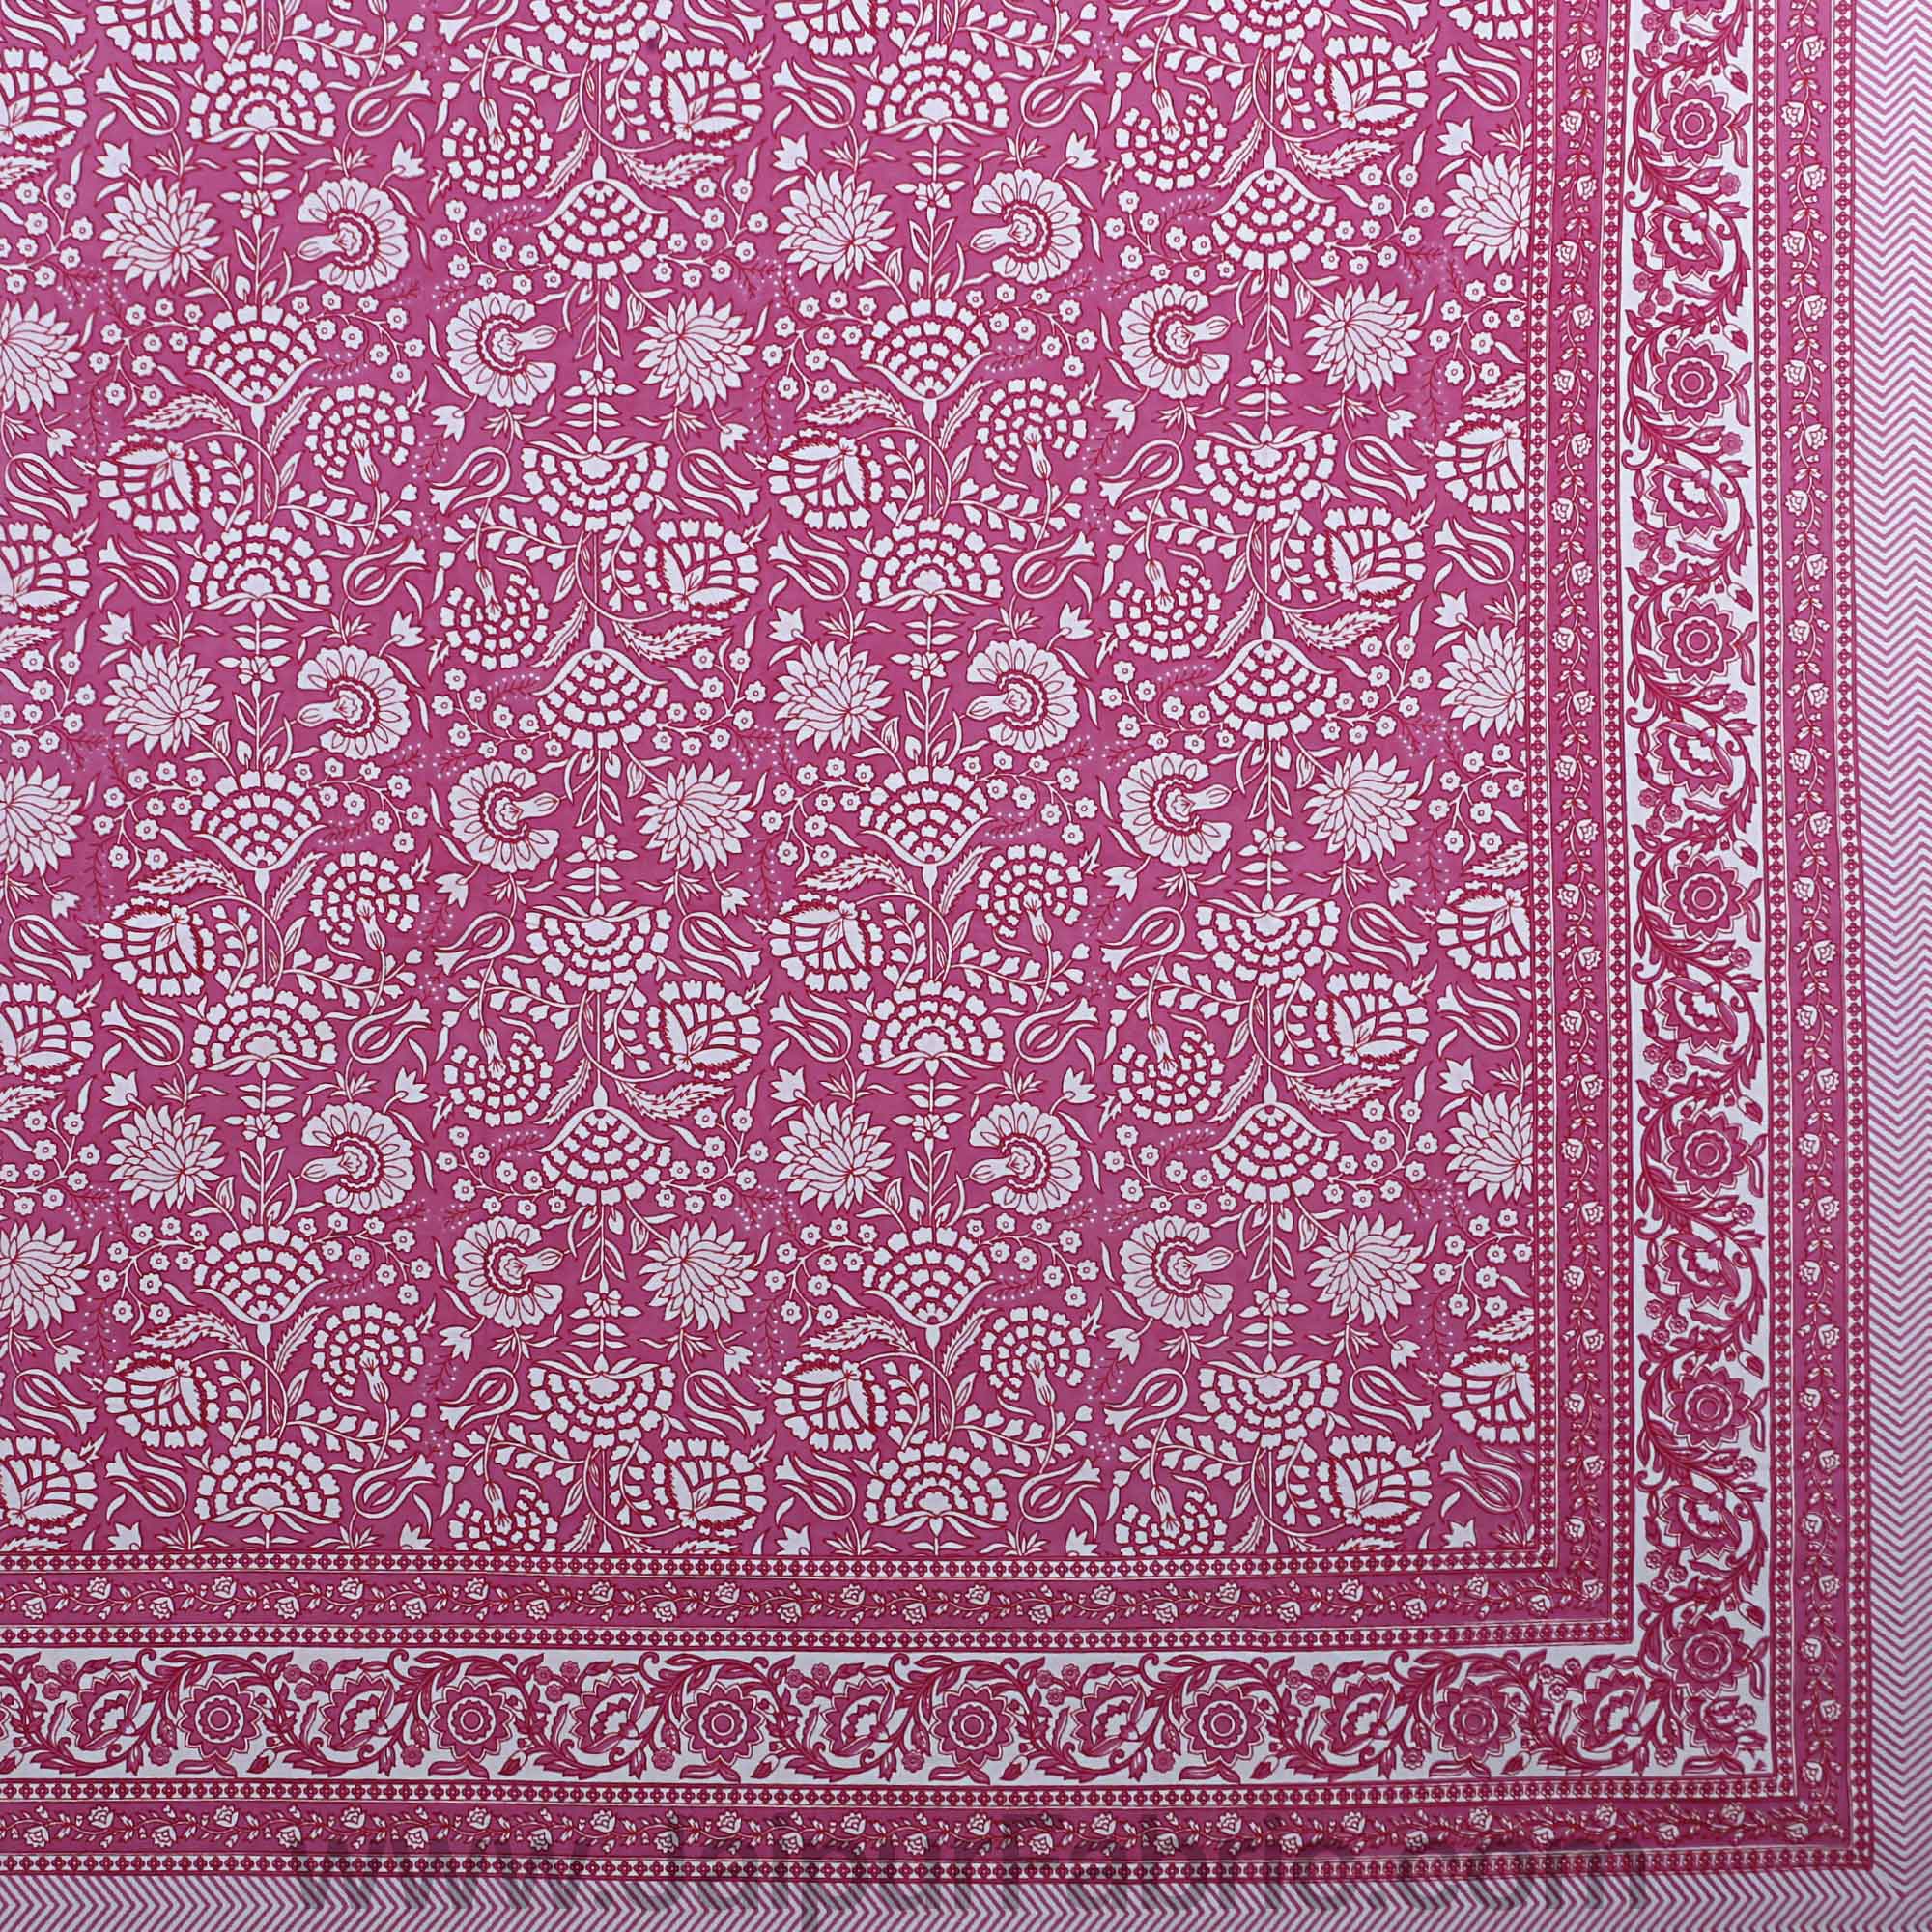 Pink Color Floral King Size Bedsheet